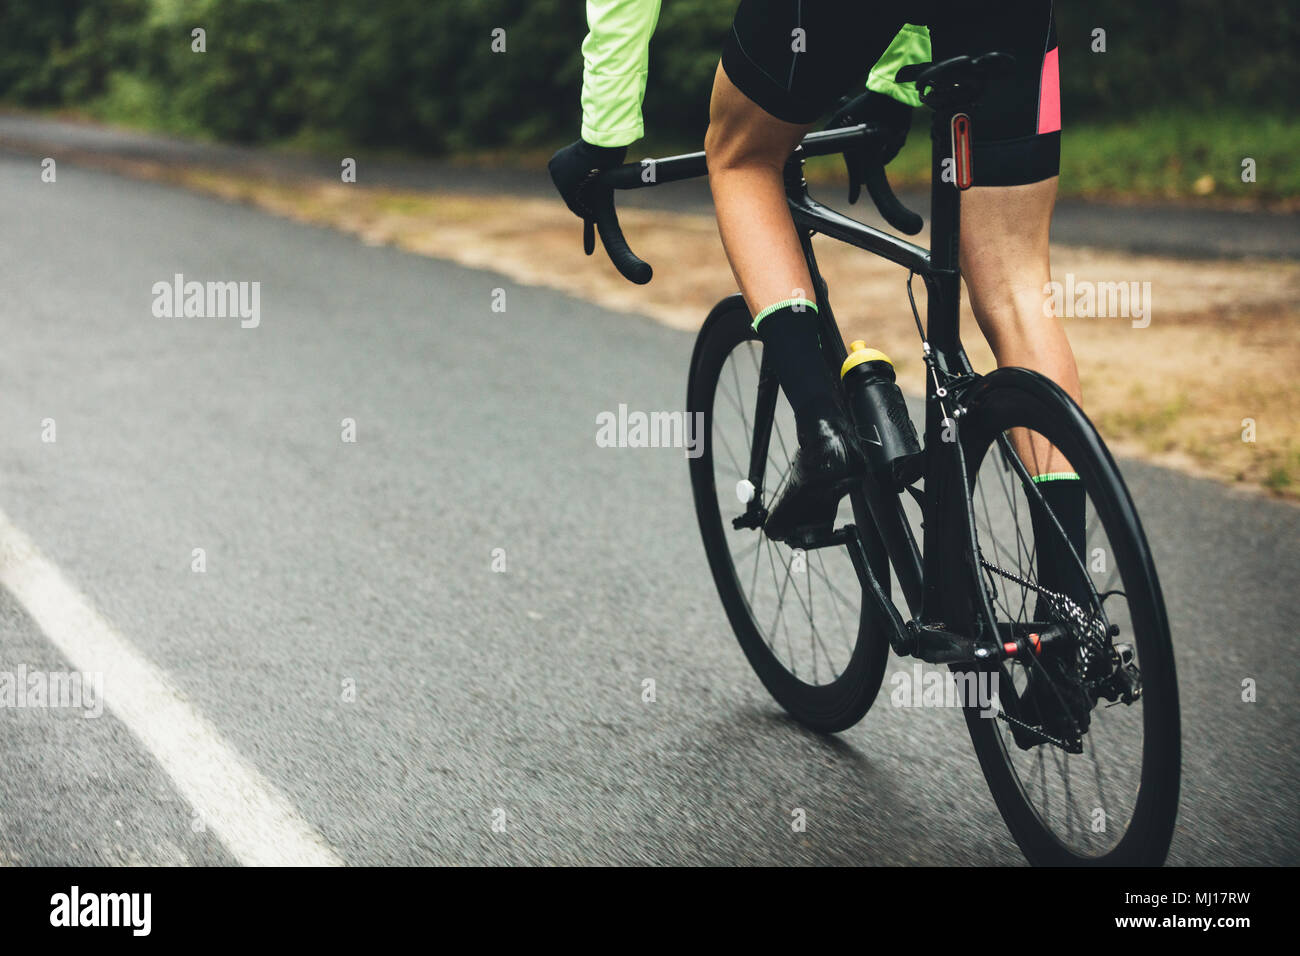 Männliche Athlet Radfahren auf der Landstraße. 7/8 Schuß des Menschen Reiten Fahrrad auf nasser Straße, Üben für einen Wettbewerb. Stockfoto